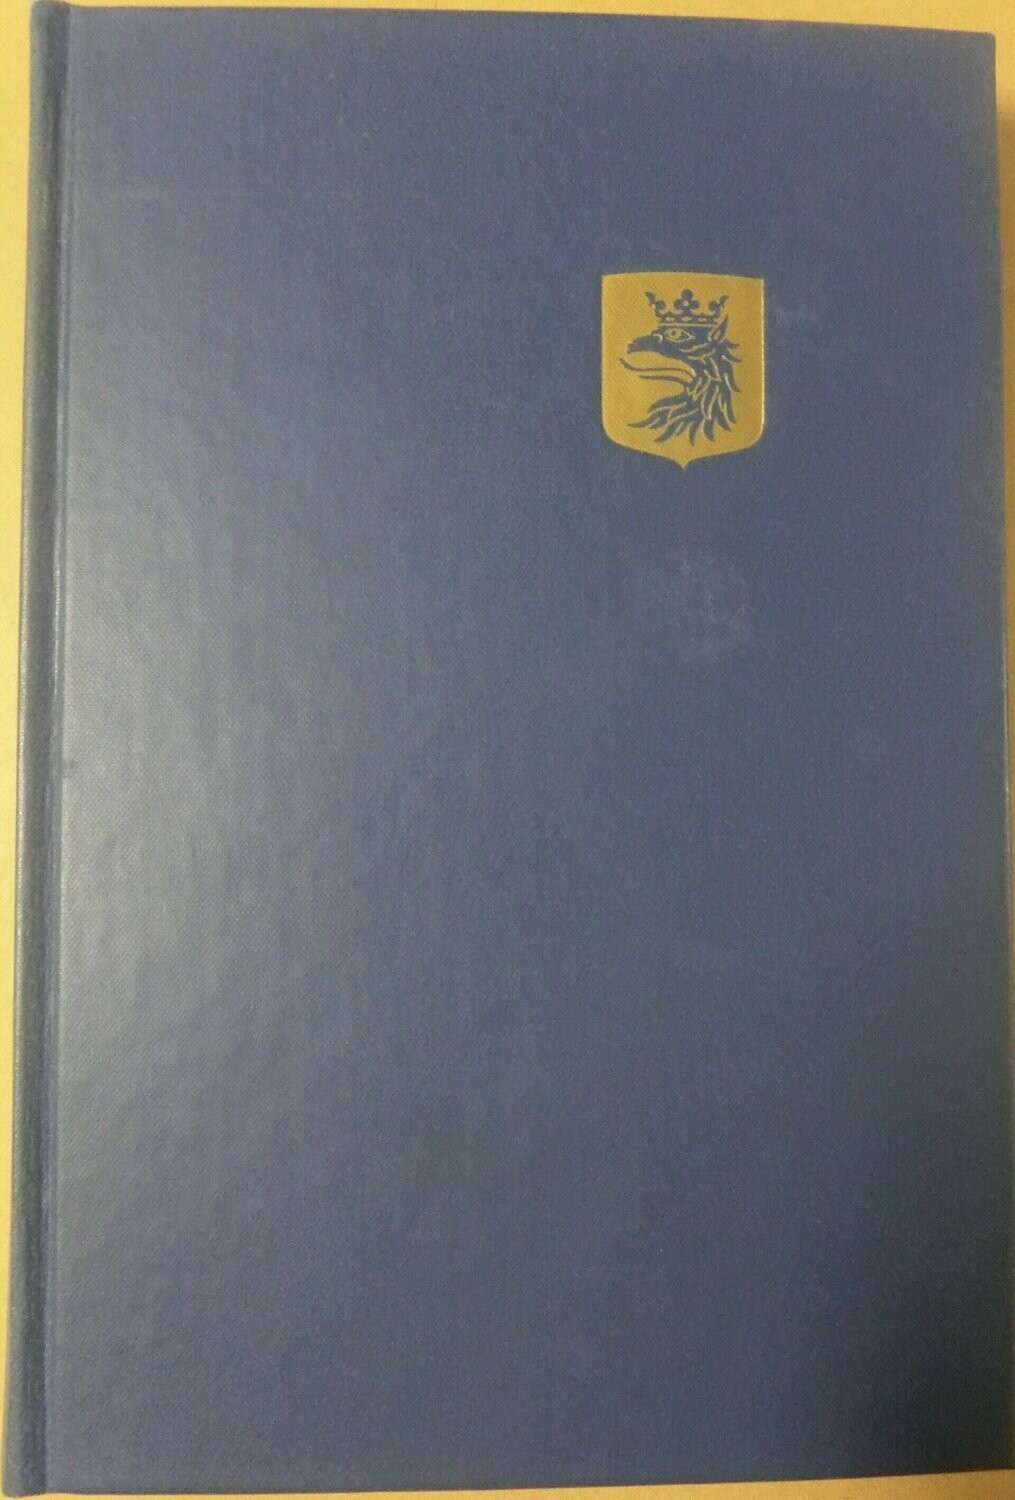 STF årsskrift 1961 - Skåne